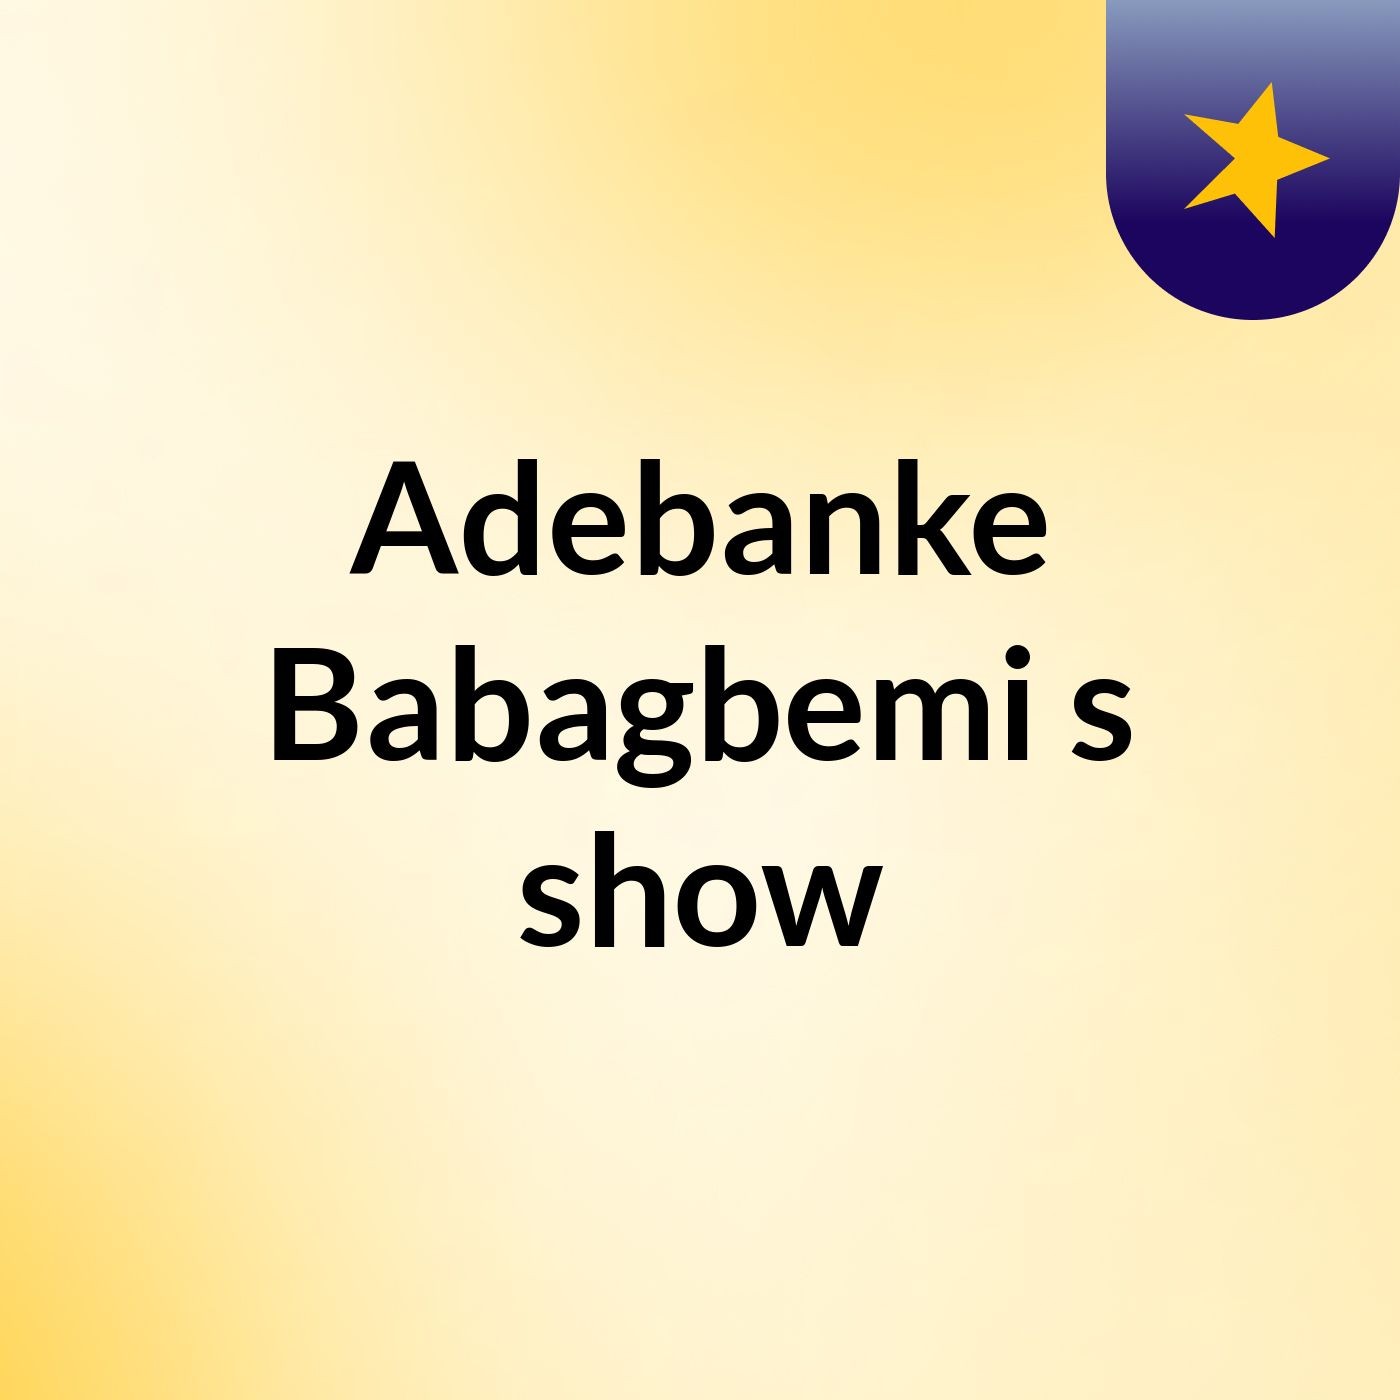 Adebanke Babagbemi's show